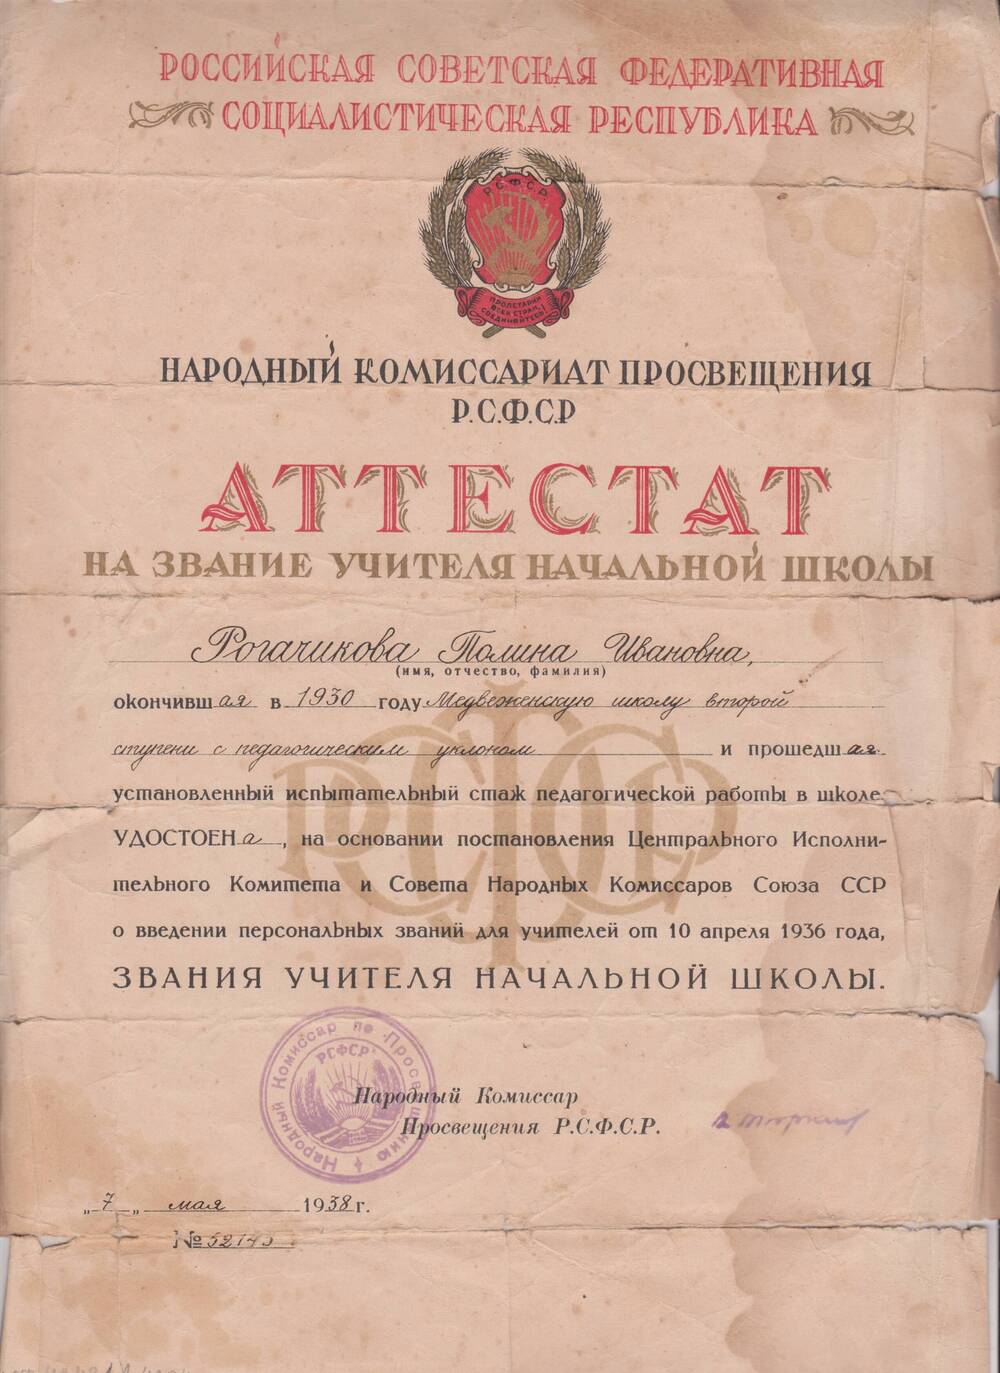 Аттестат на звание учителя начальной школы Рогачиковой Полины Ивановны.